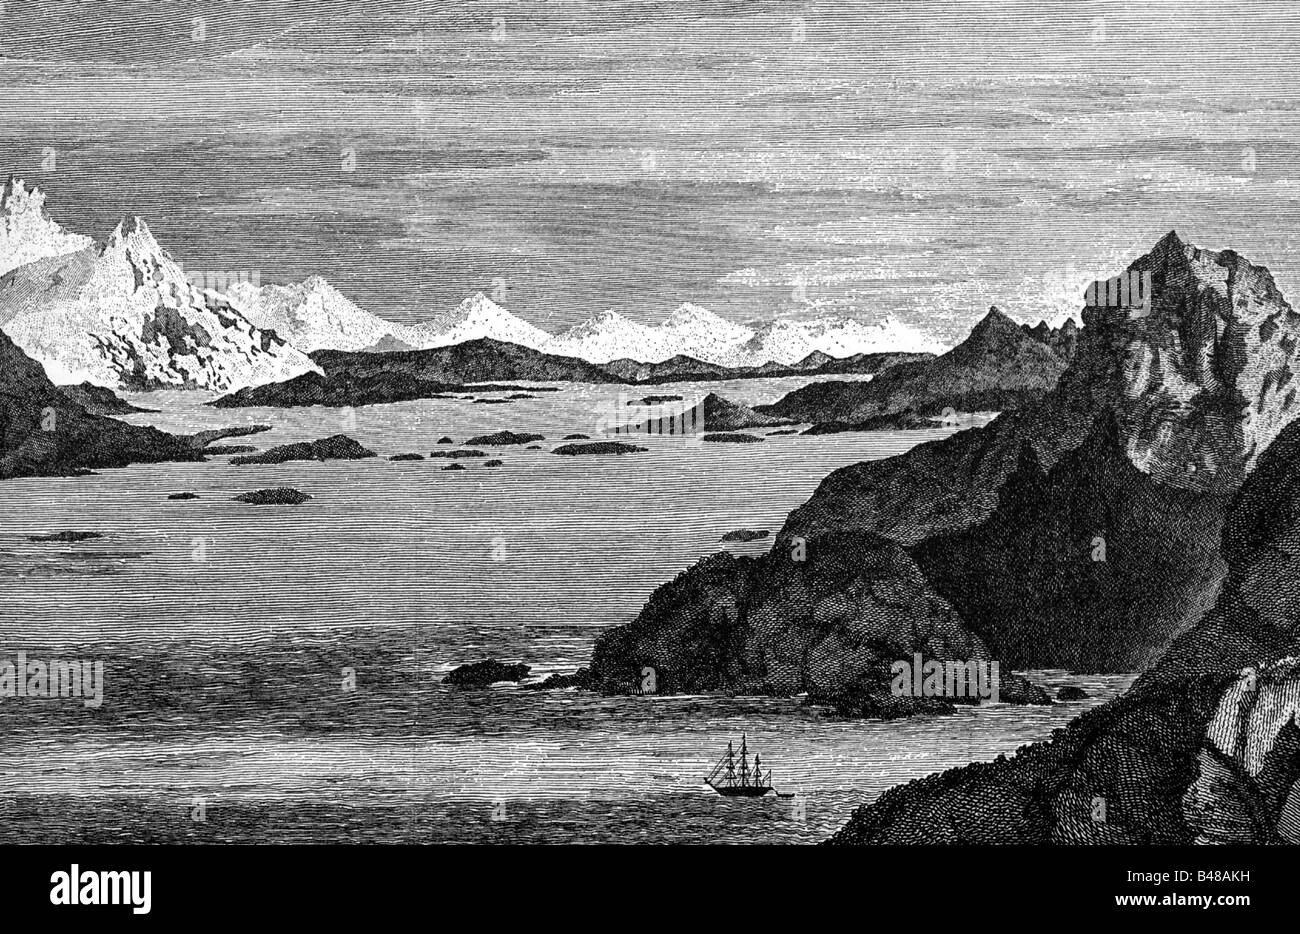 Cook, James, 27.10.1728 - 14.2.1779, marin anglais et découvreur, son navire à Tierra del Fuego, gravure sur cuivre pour son livre de voyage, après avoir tracé par Cook lui-même, 18e siècle, l'artiste n'a pas d'auteur pour être effacé Banque D'Images